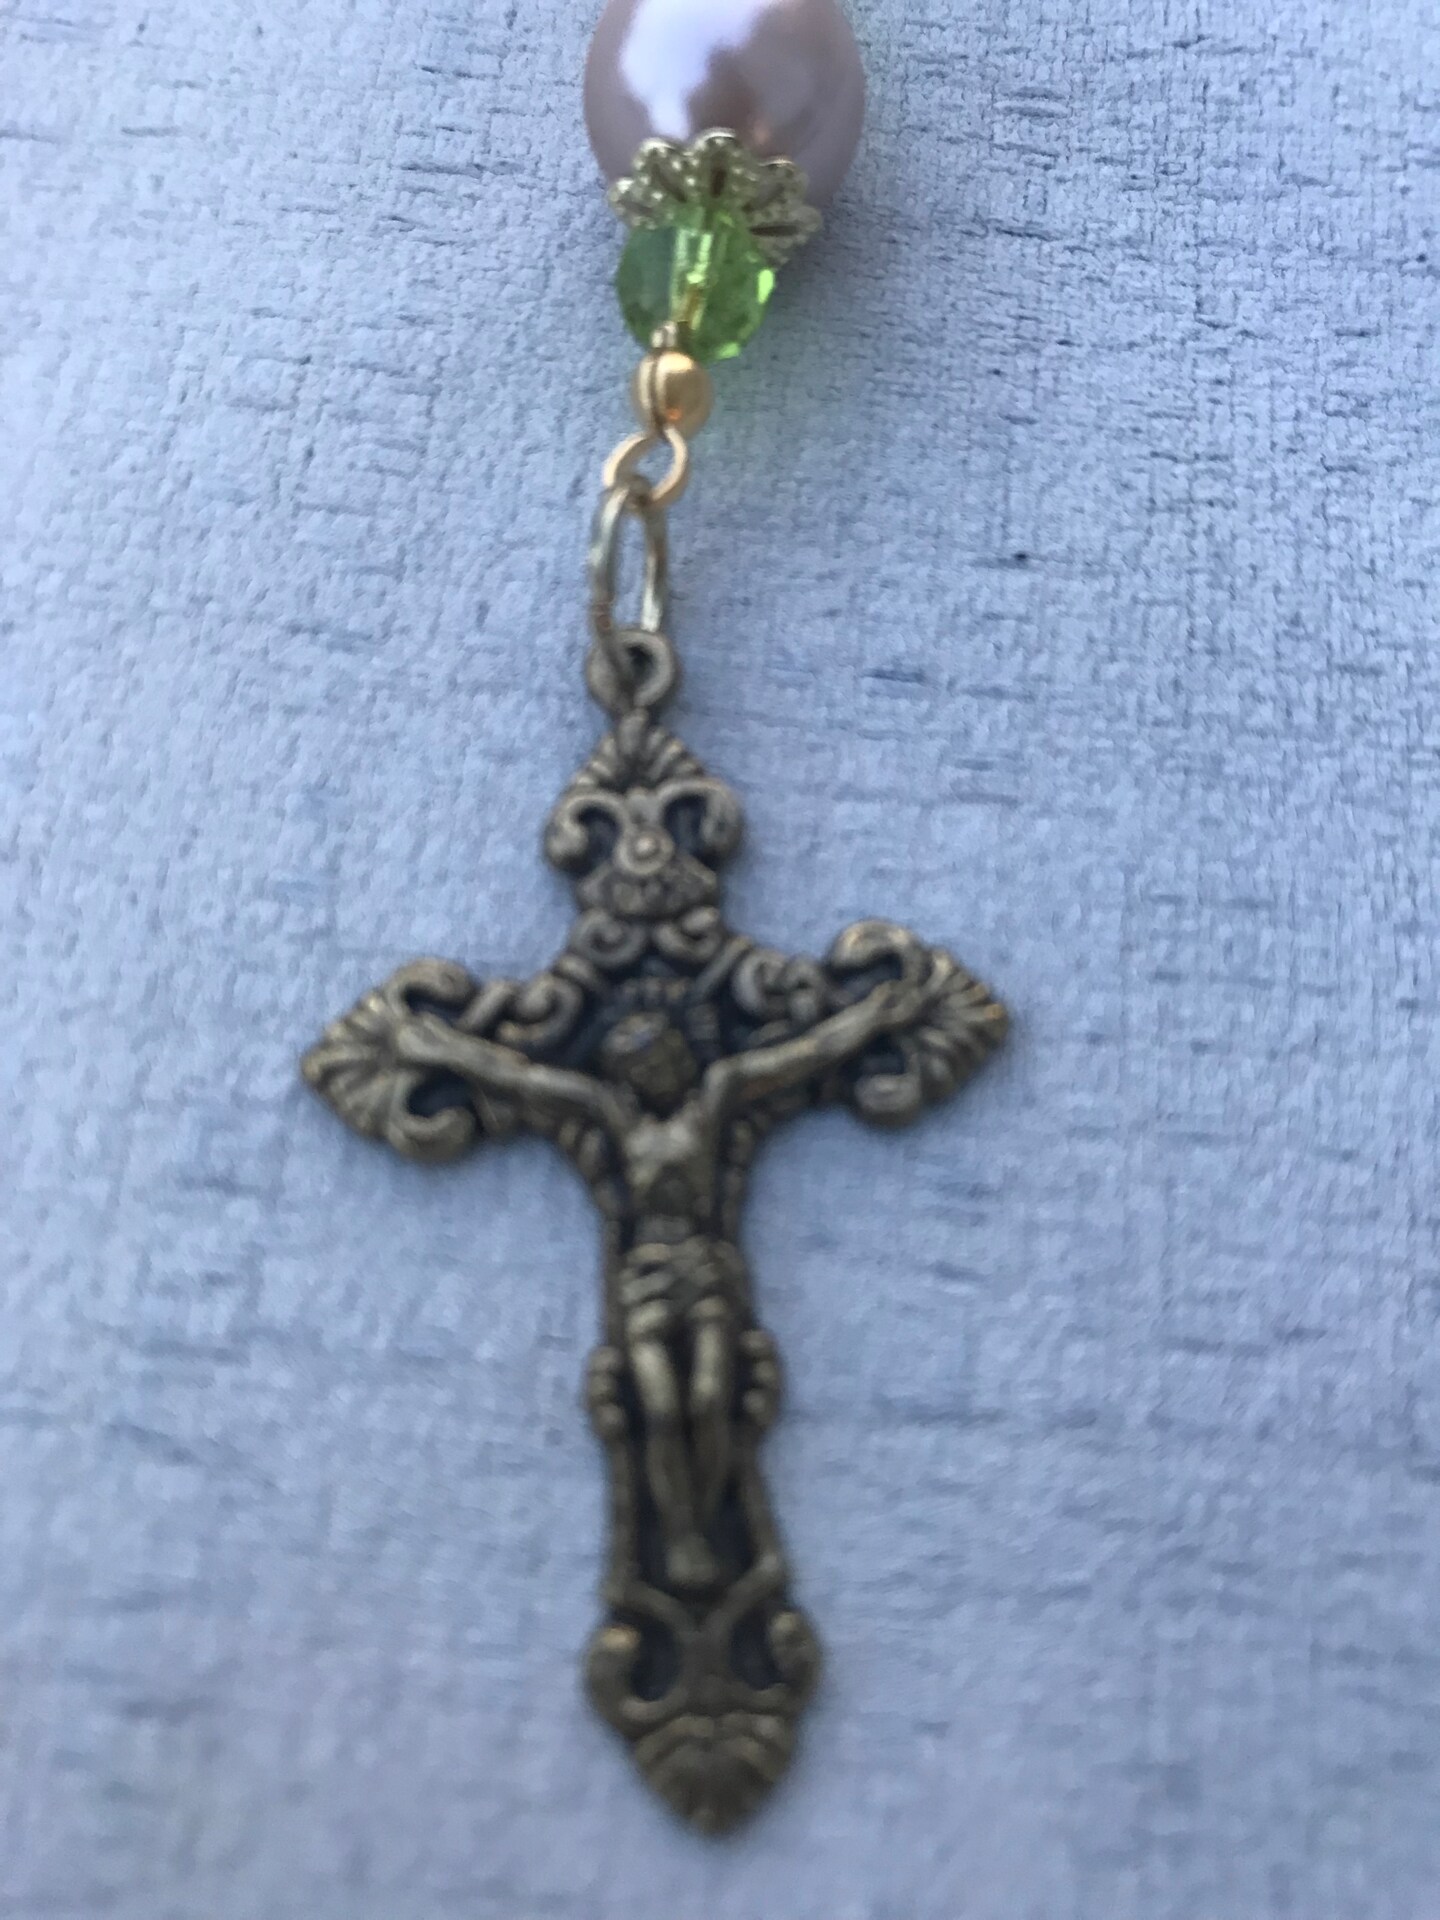 Car rosary, auto rosary, pocket rosary, Saint Joseph rosary, rear